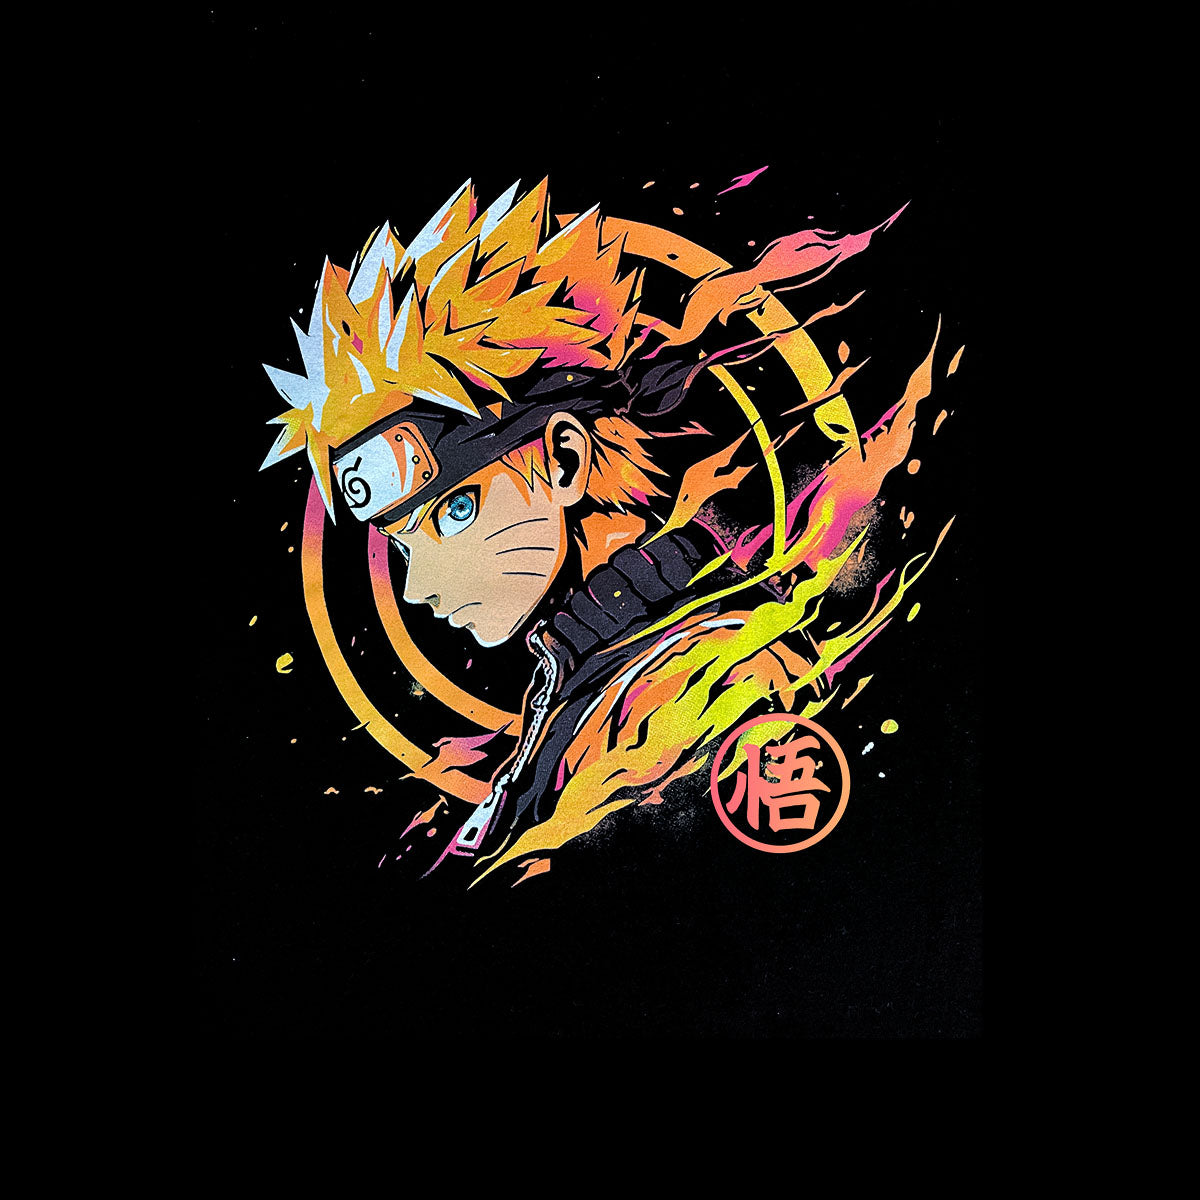 Anime Goku Dragon Ball Black T-shirt